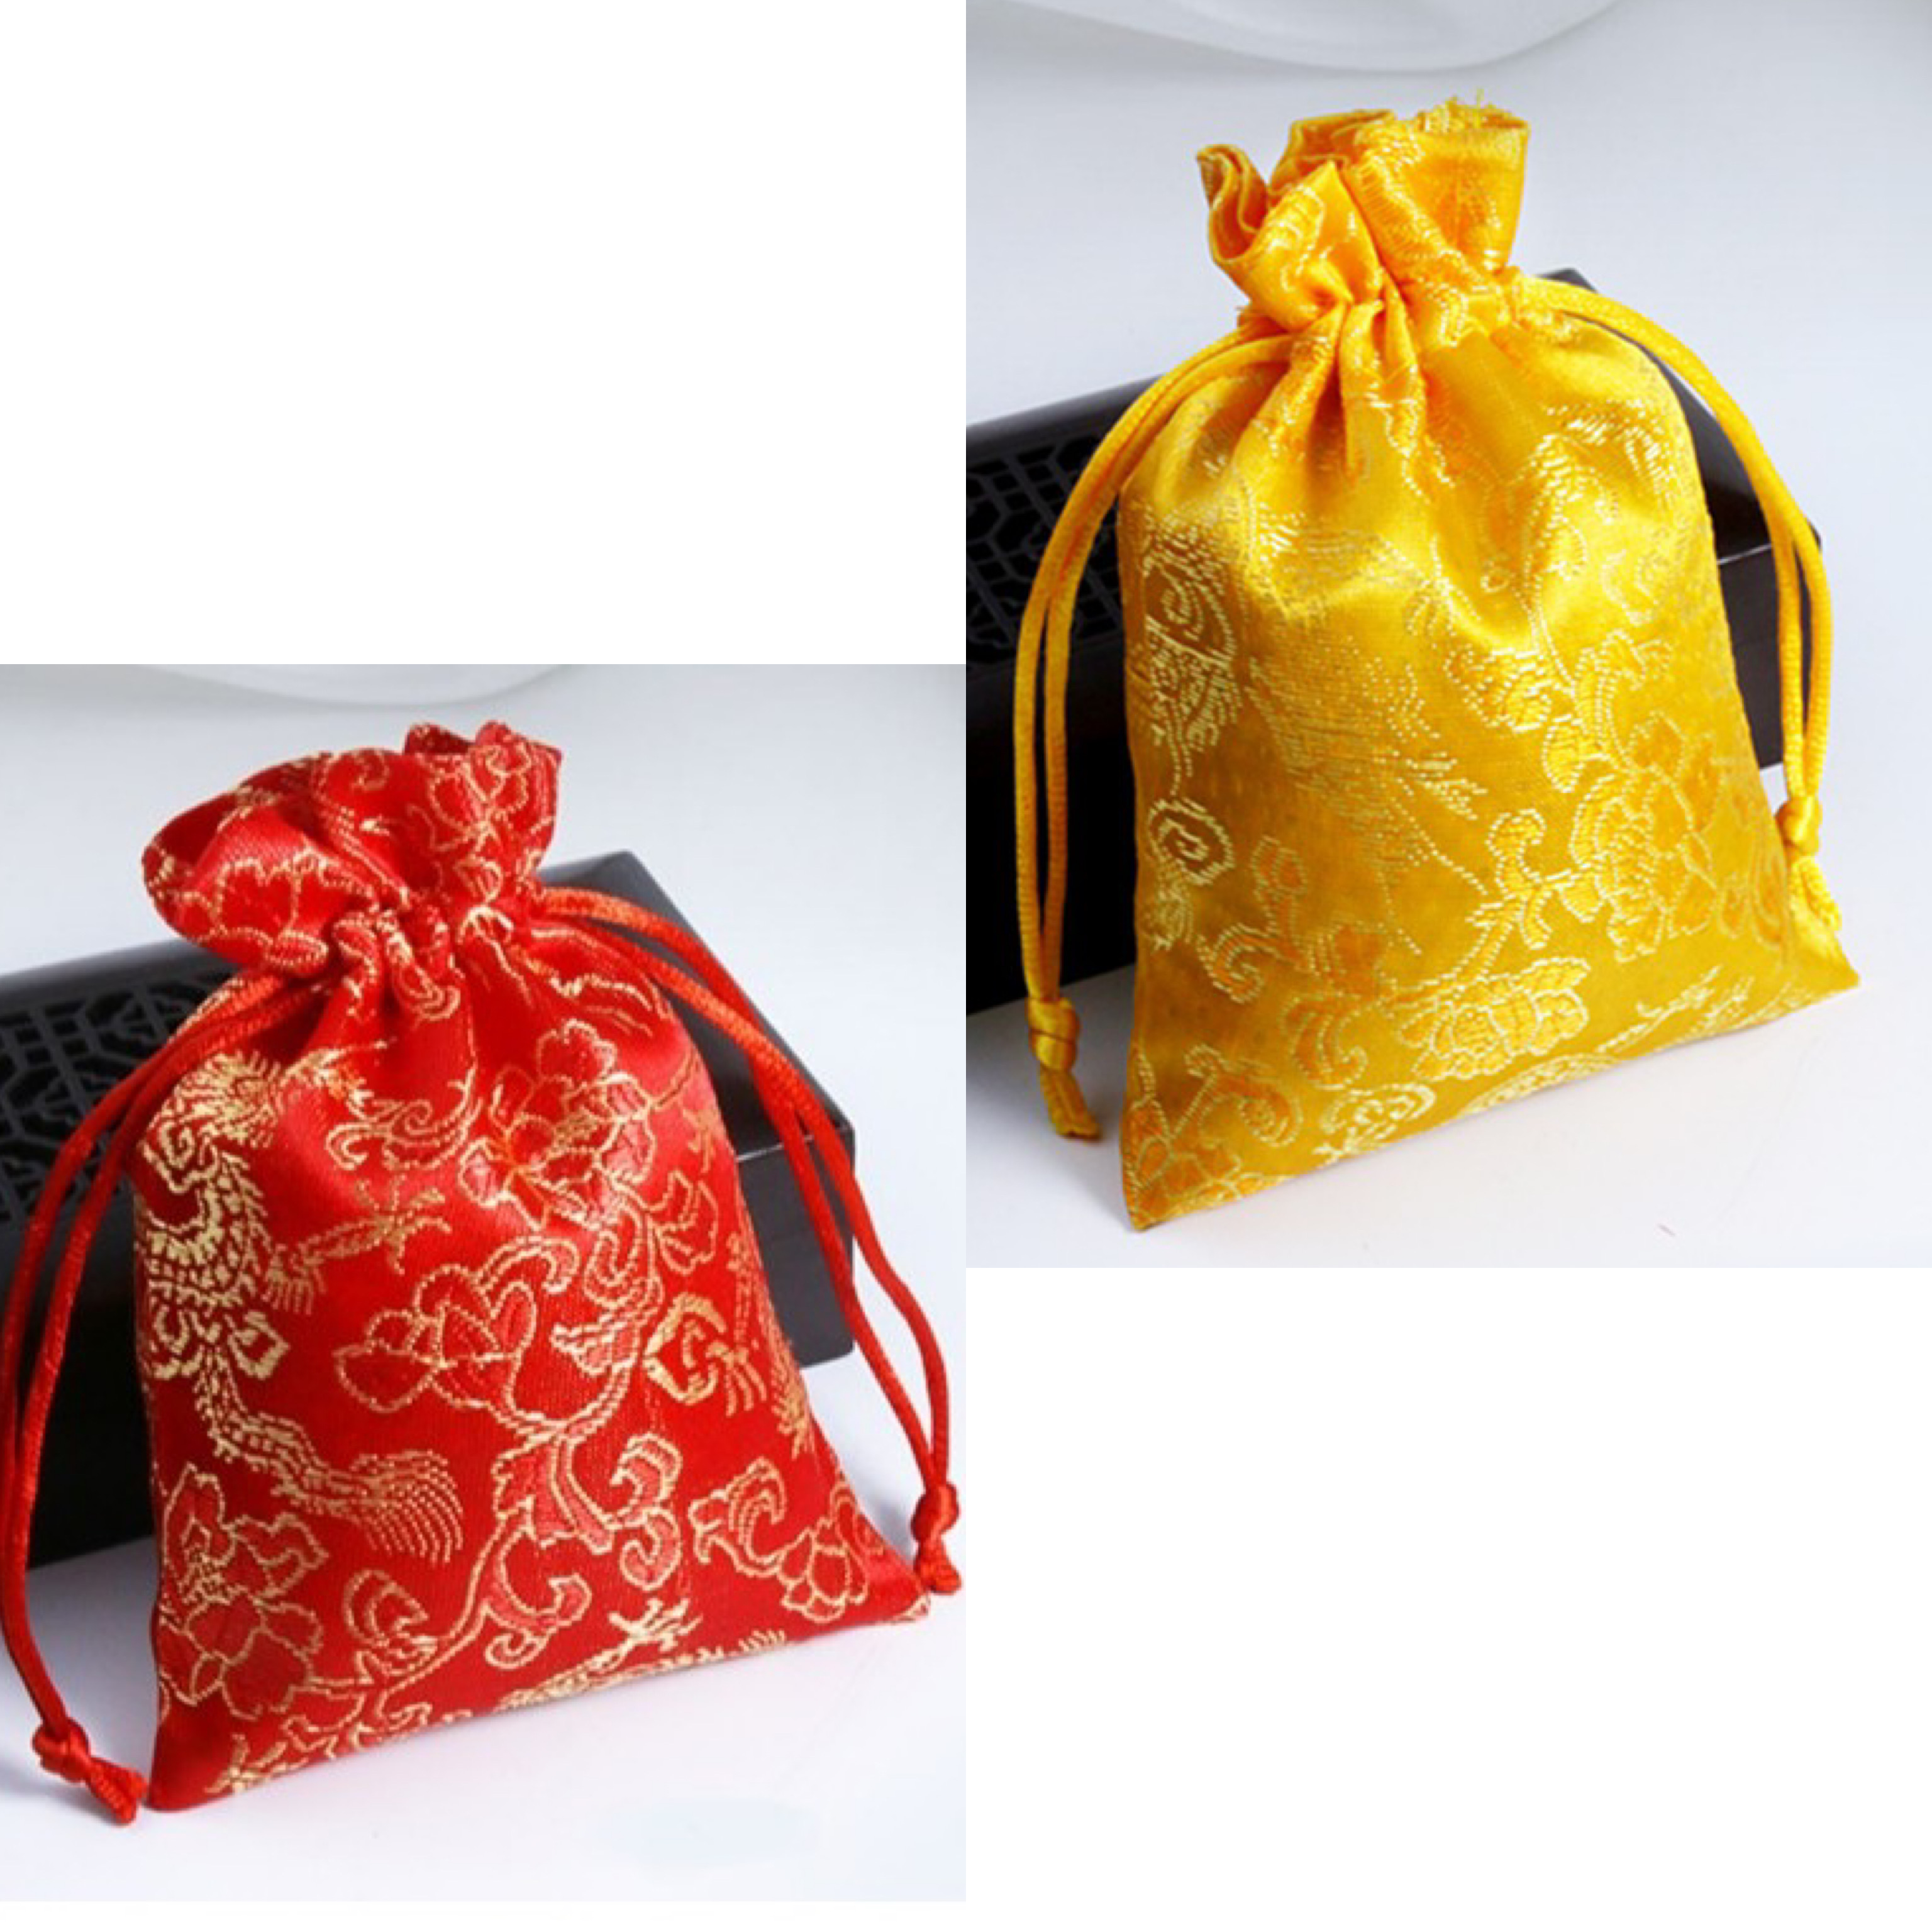 bộ 2 túi gấm rông phượng với 2 màu đỏ vàng bắt mắt, thích hợp để đựng trang sức, đồng xu - PCCB MINGT